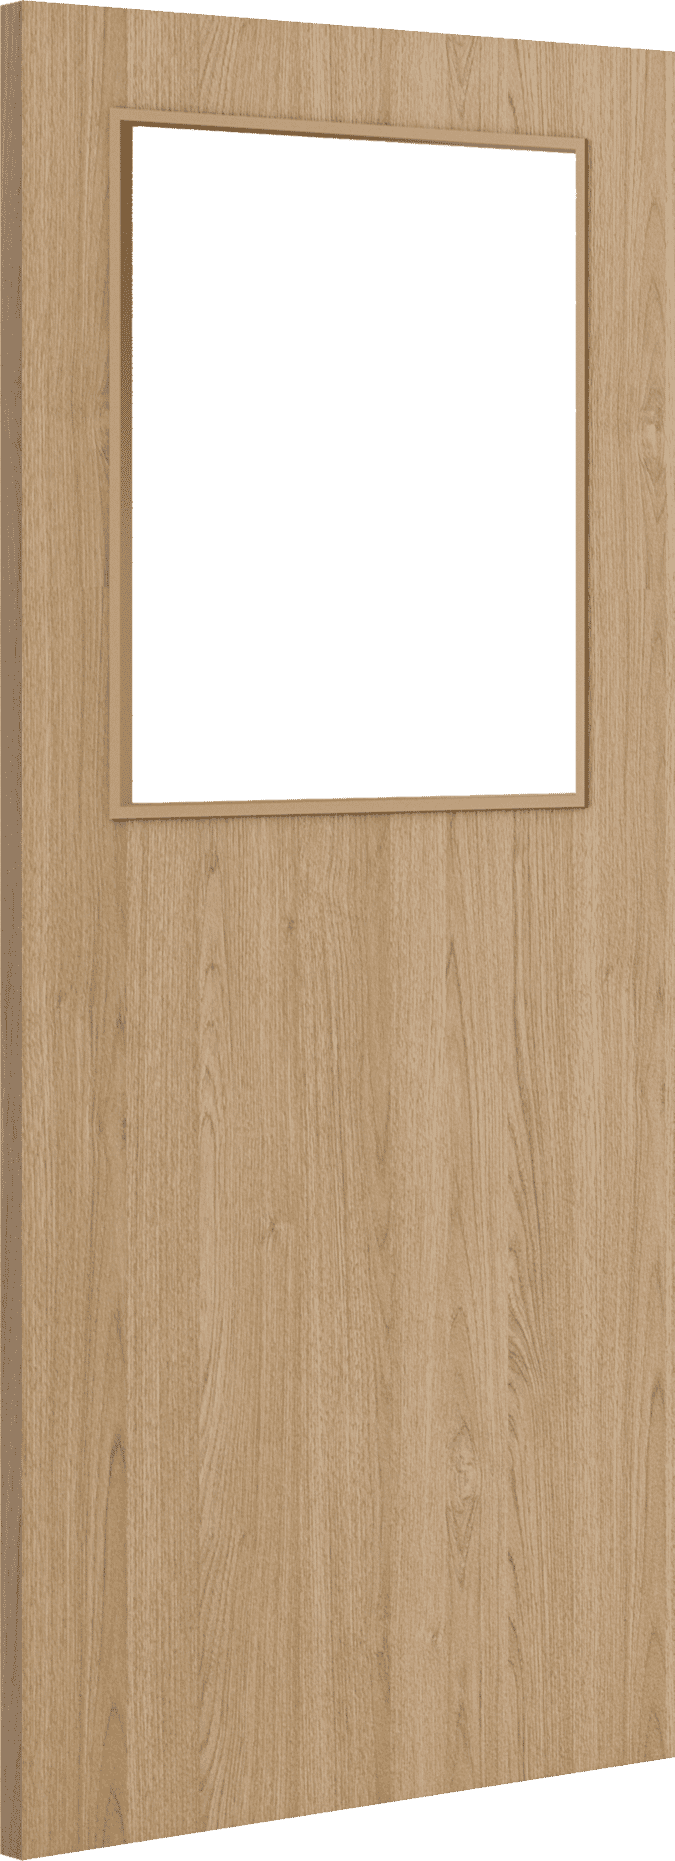 1981mm x 686mm x 44mm (27") Architectural Oak 01 Clear Glazed - Prefinished FD30 Fire Door Blank